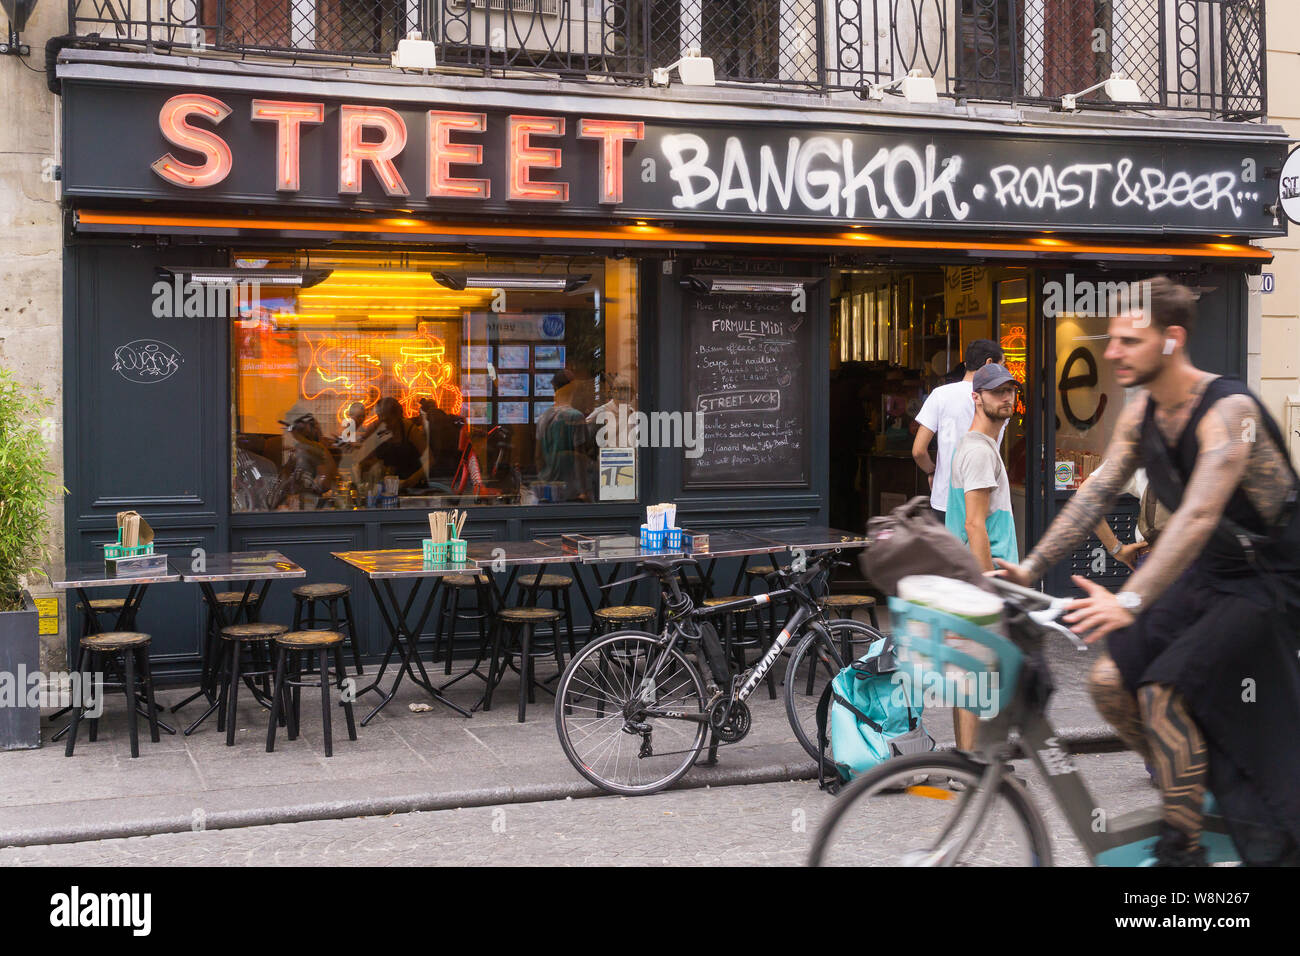 Street food Paris - Extérieur de la Thai street food Street Bangkok Roast & Bière sur la rue Saint Denis à Paris, France, Europe. Banque D'Images